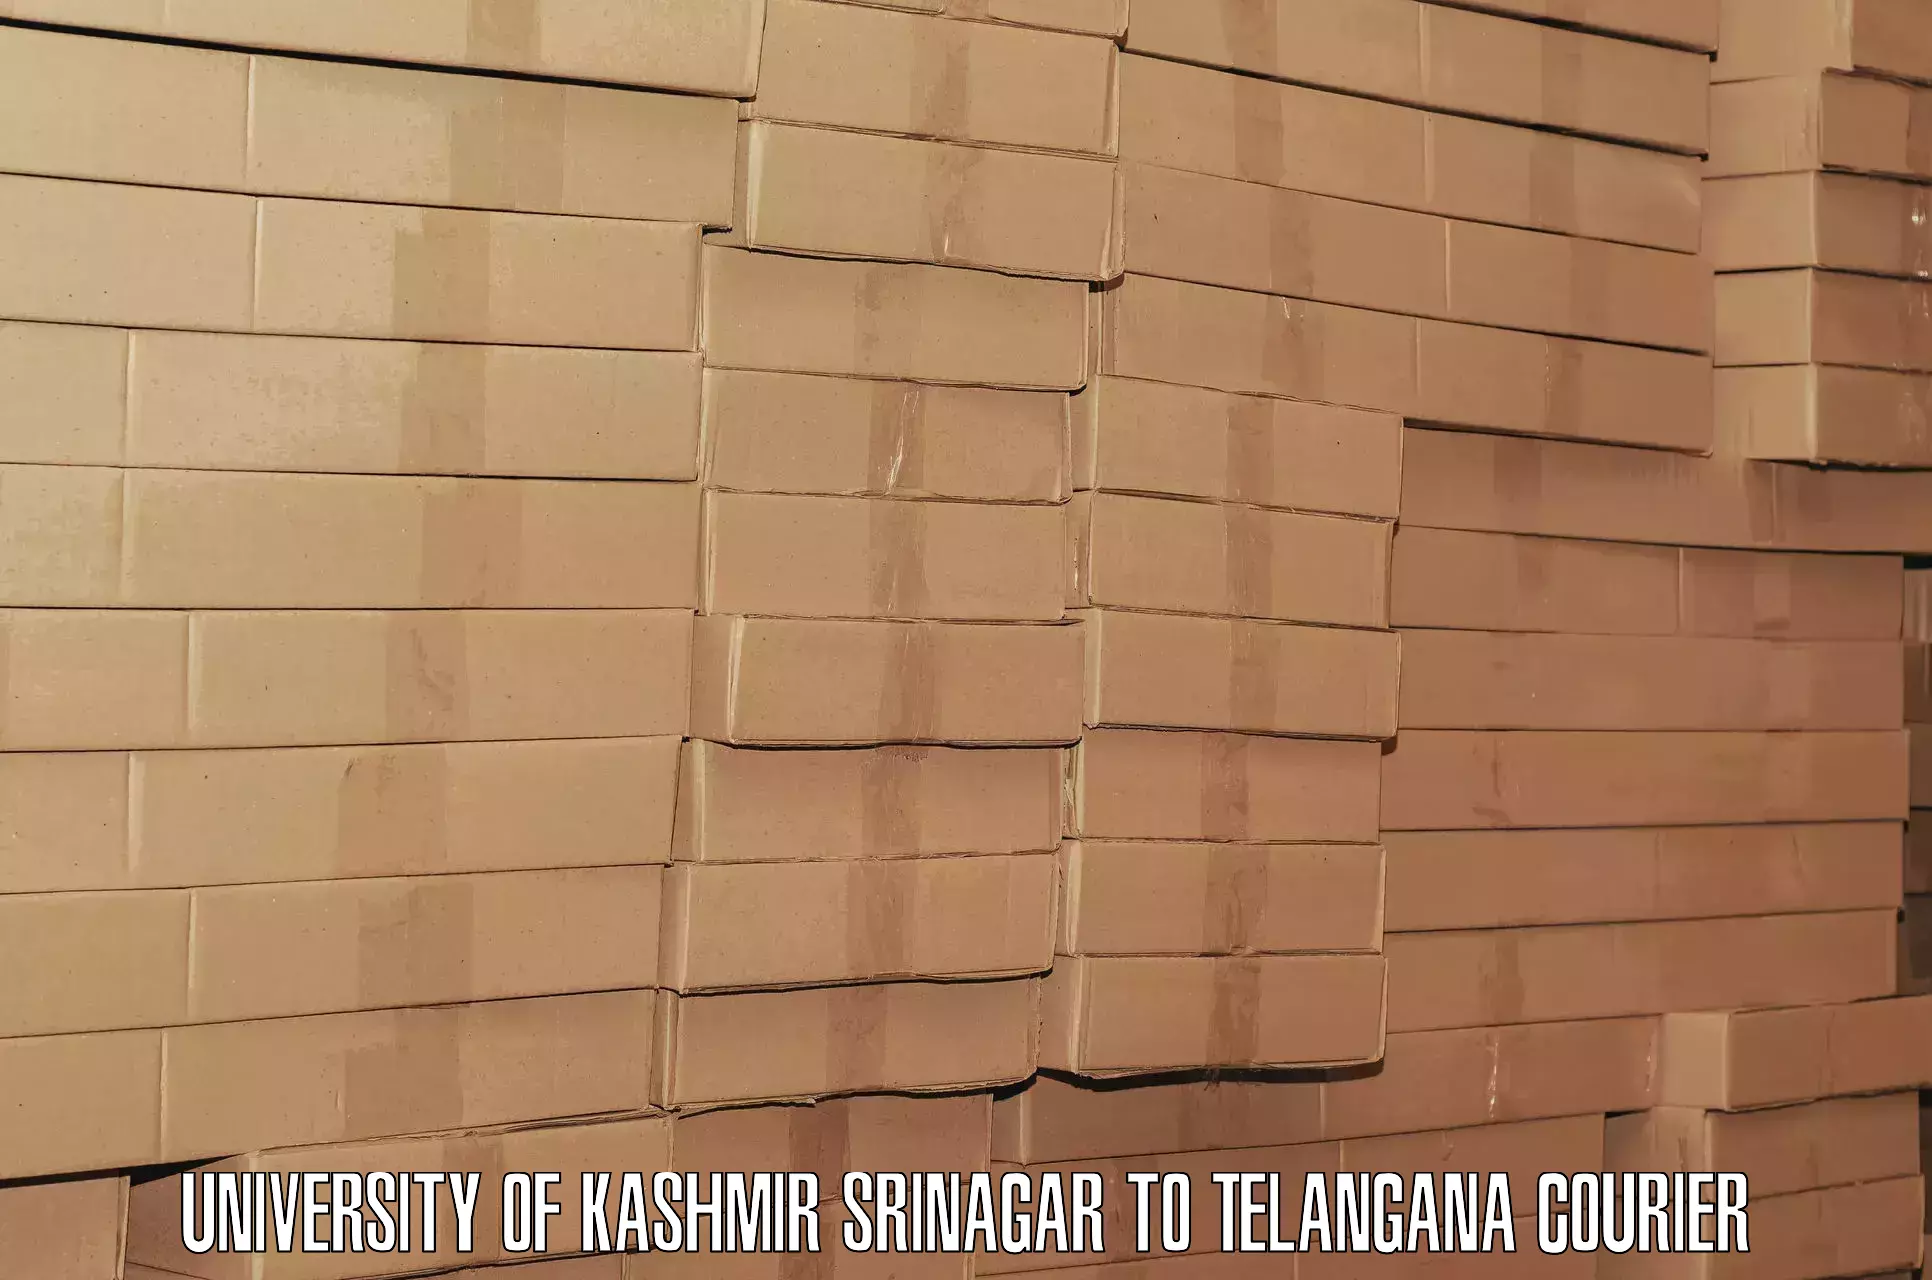 Baggage transport innovation University of Kashmir Srinagar to Manopad